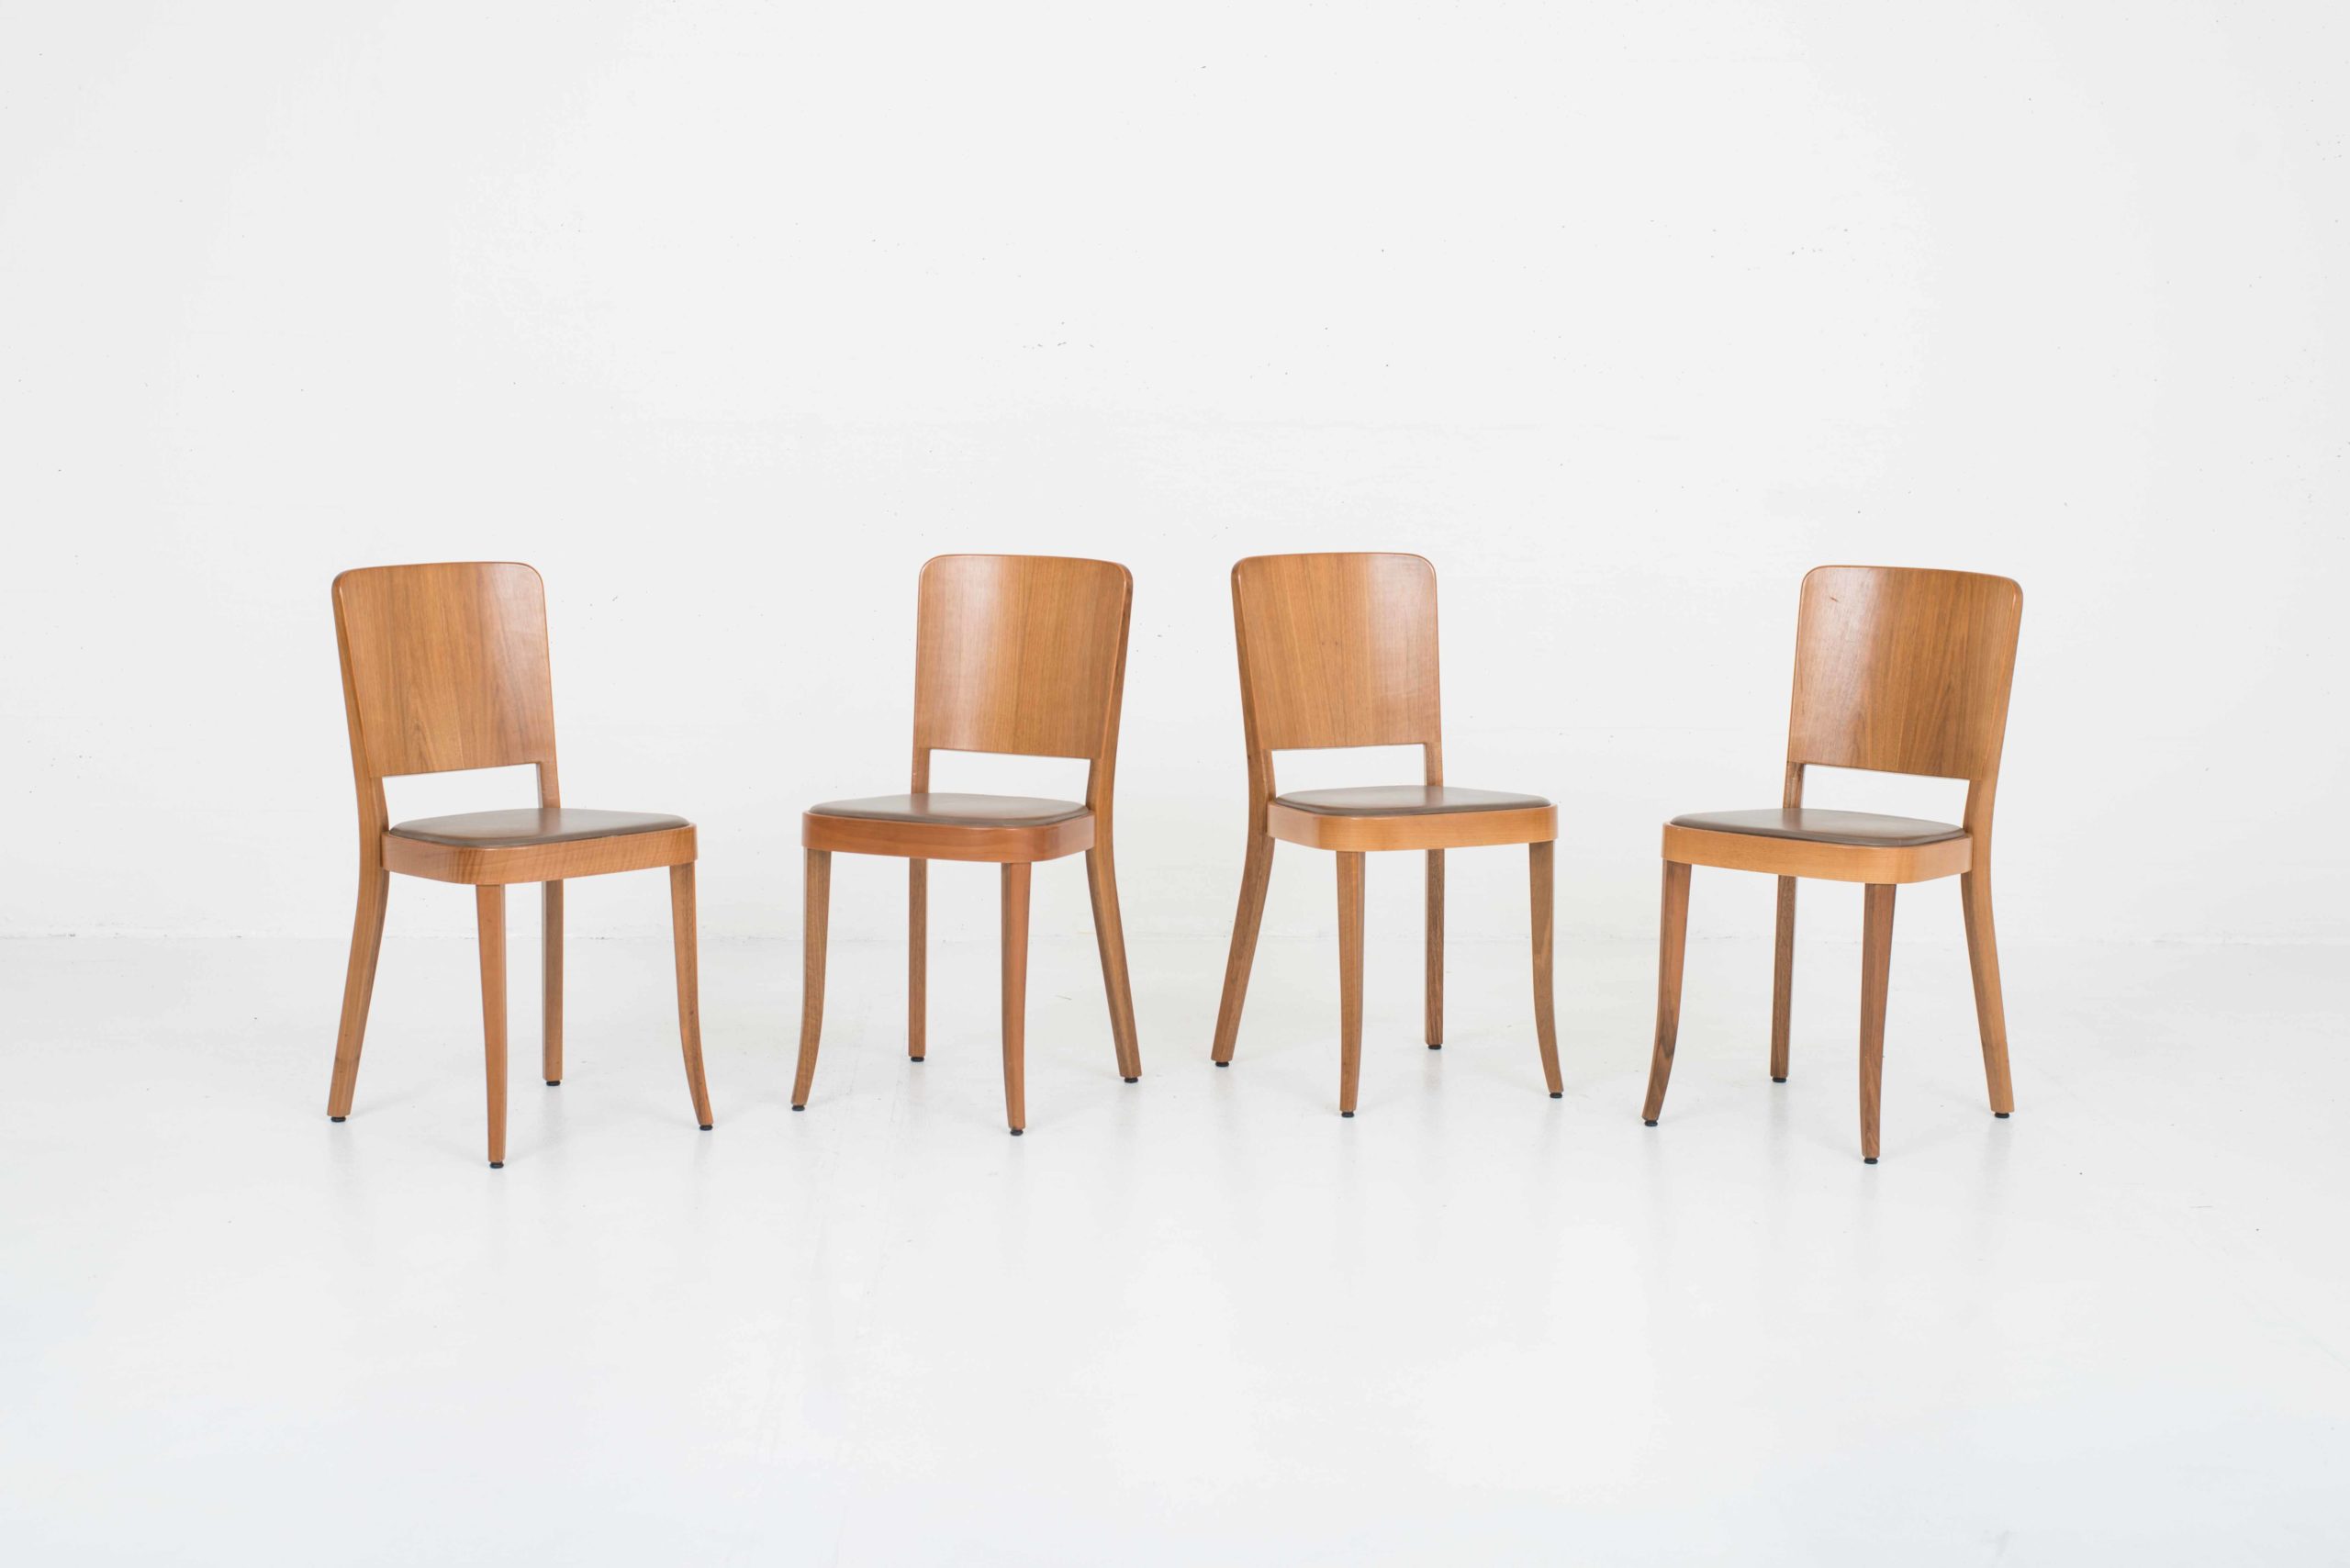 Horgenglarus 1-793 Stühle von Max Ernst Haefeli, im Zweierset-1